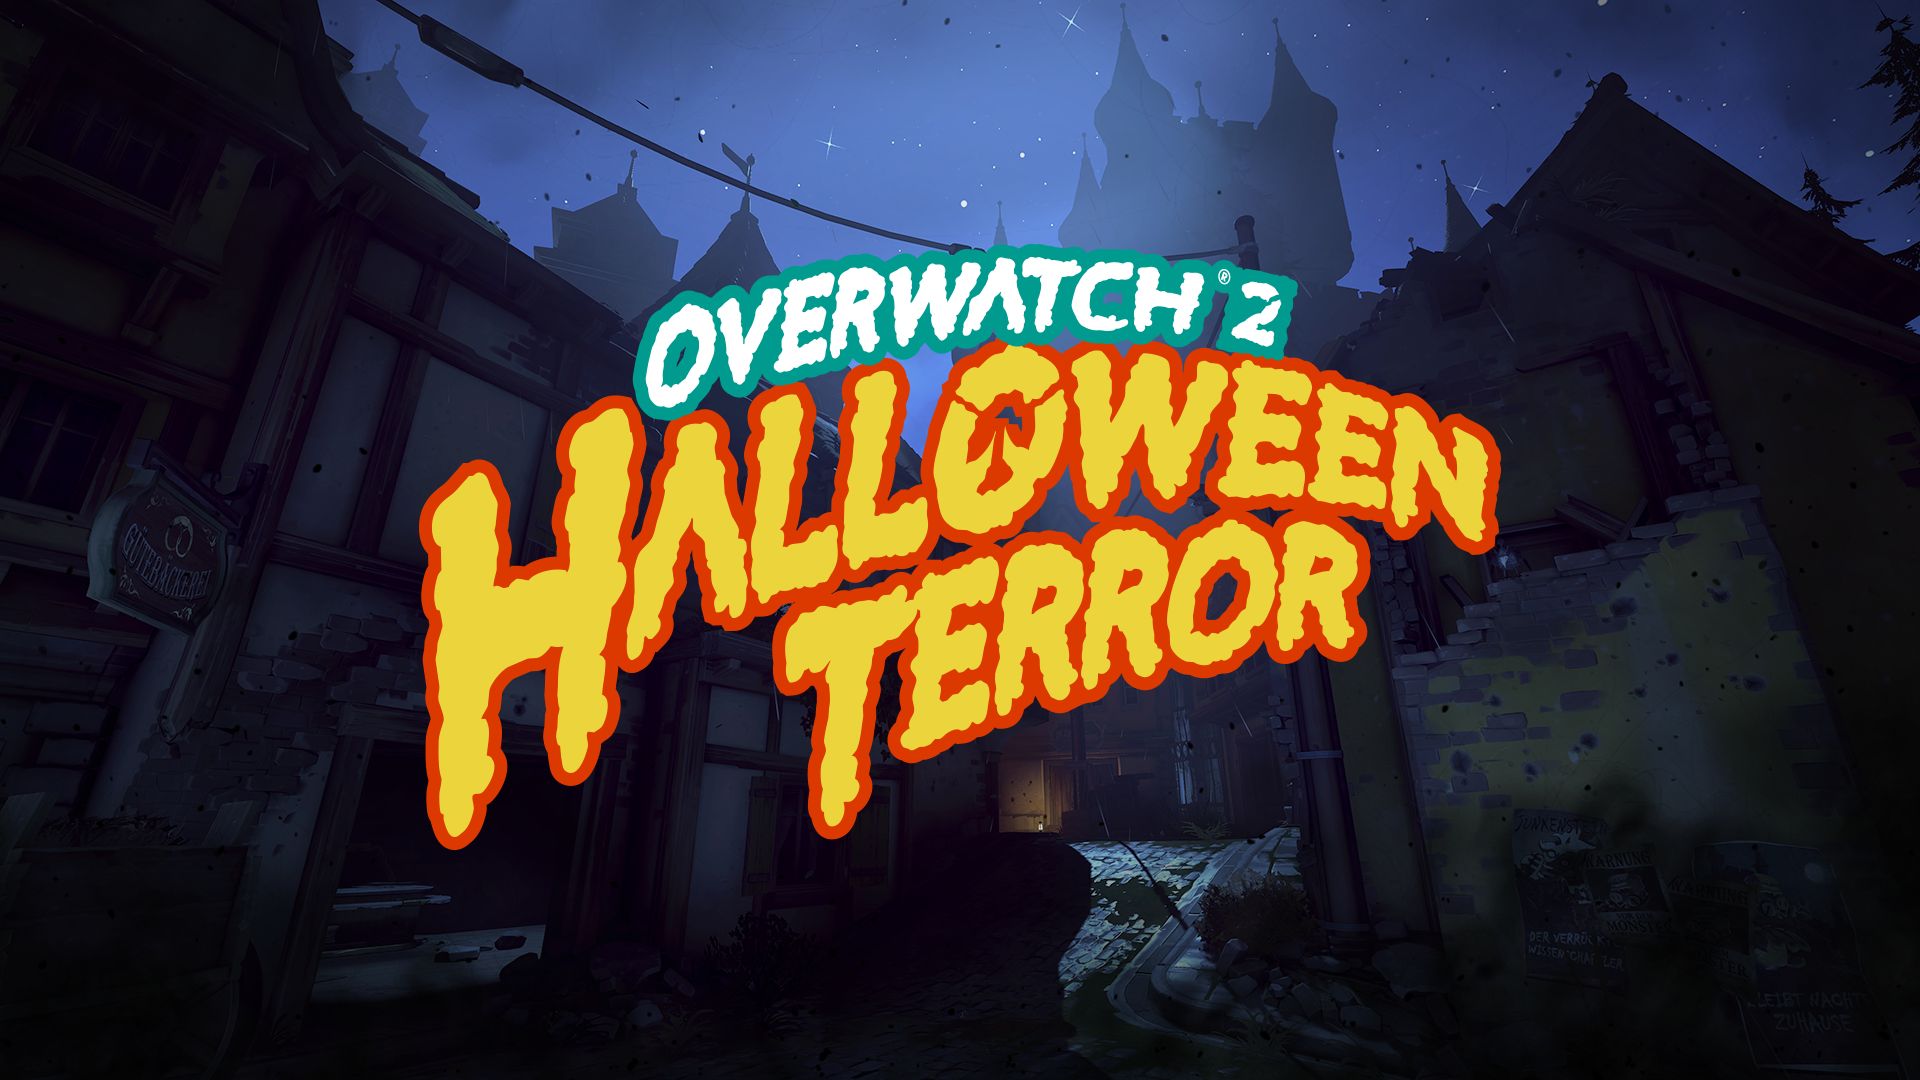 Overwatch 2 - Halloween Terror